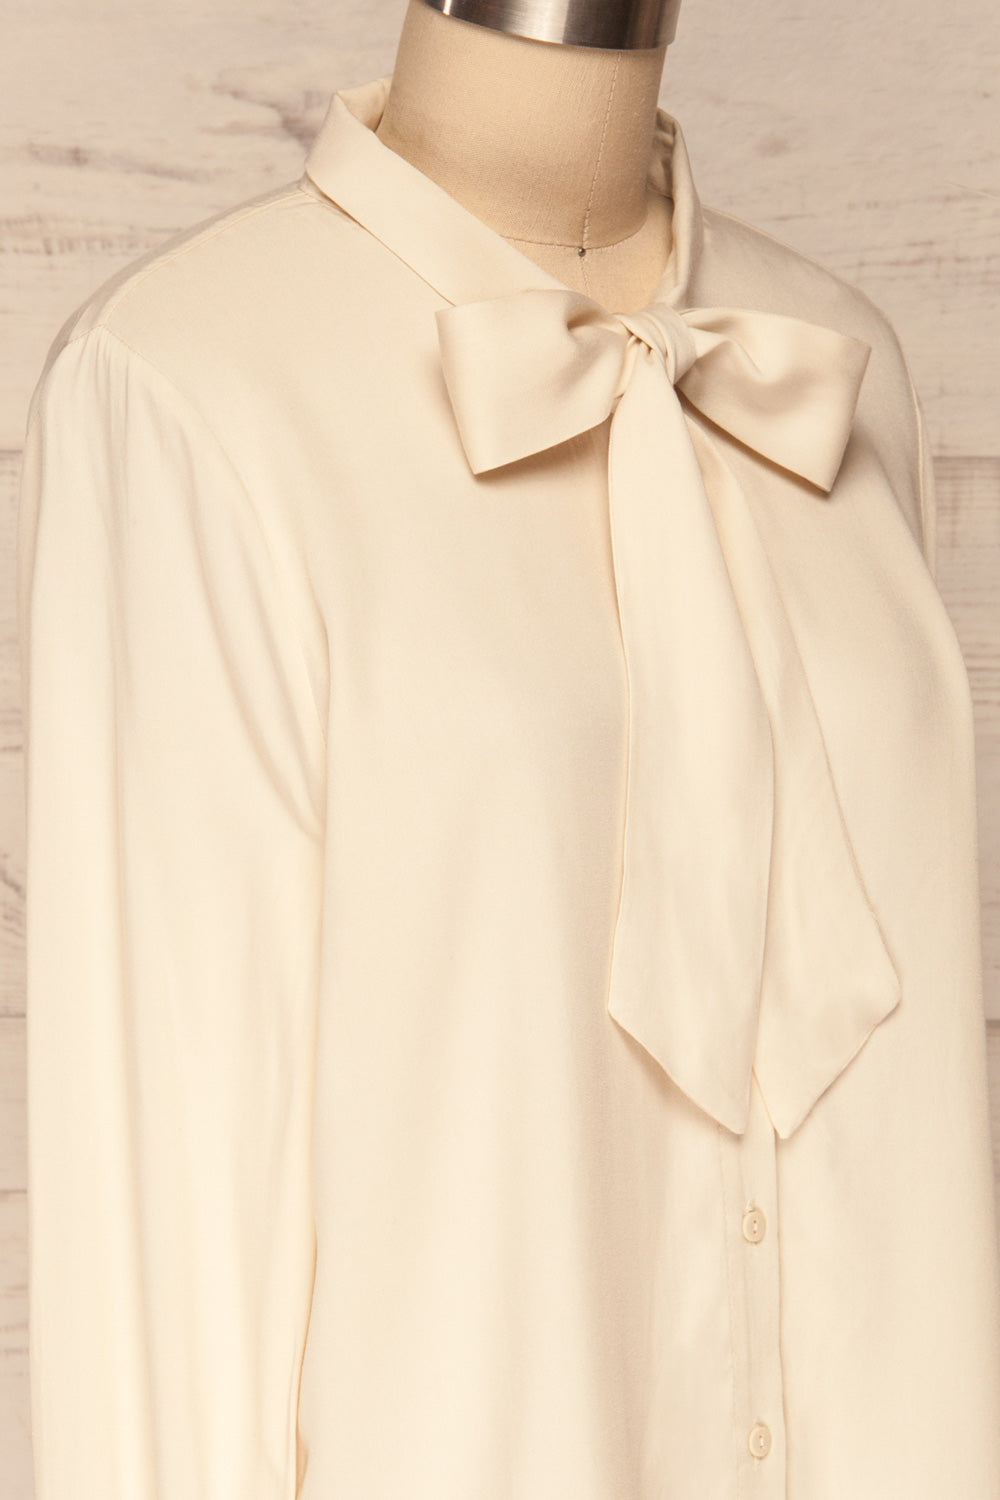 Wijchen Beige Button-Up Shirt w/ Tie Collar side close up | La Petite Garçonne